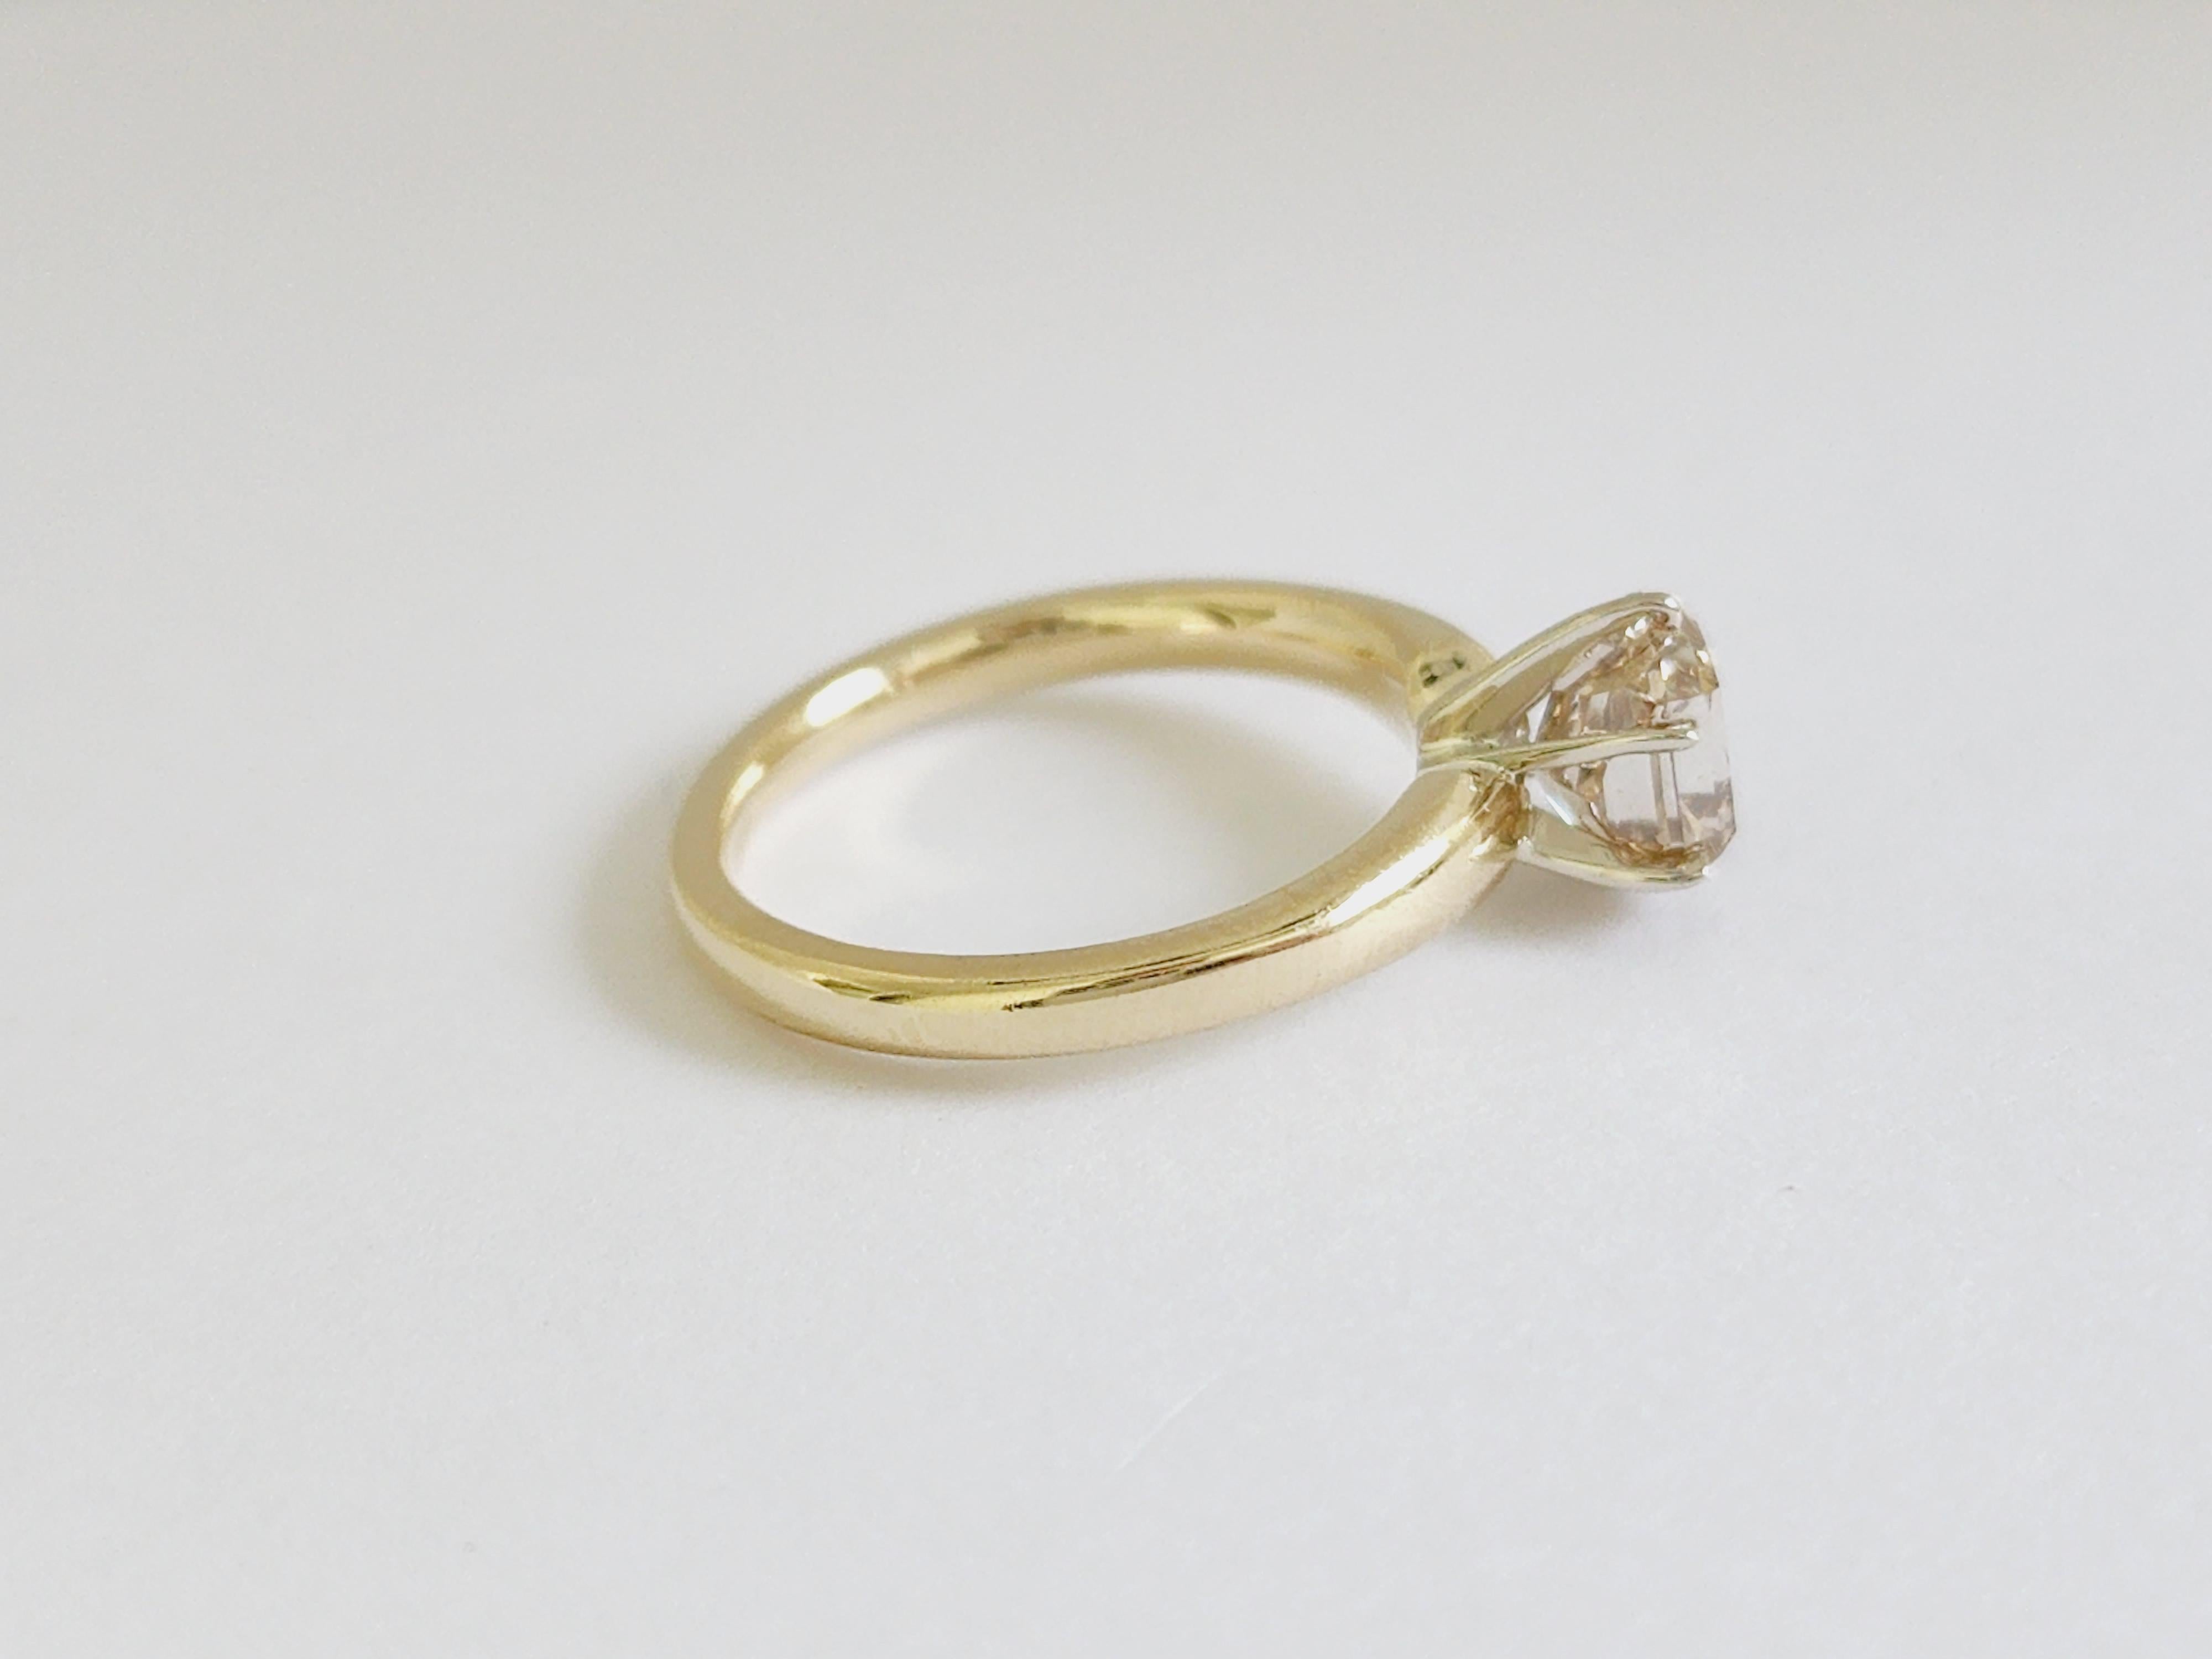 1,66 Karat strahlender Diamant auf 6 Zacken Gelbgold 14 Karat Solitär Ring. 
Natürliches braun-gelbes Naturleder, VS2